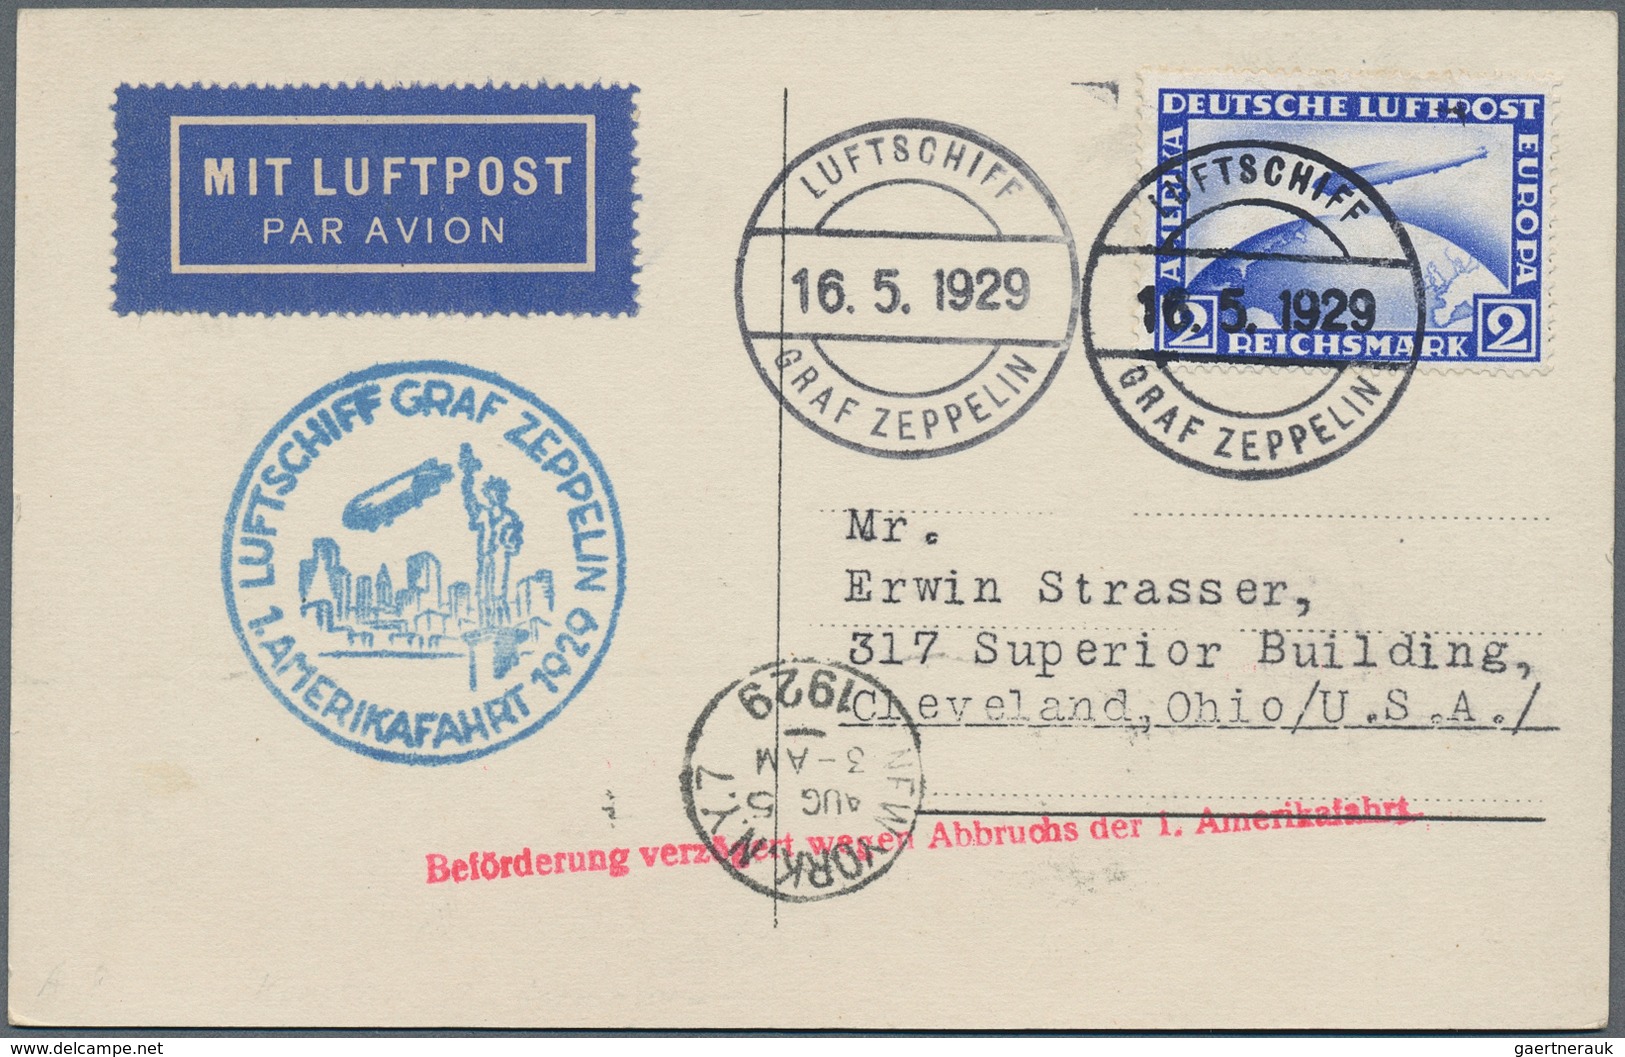 Zeppelinpost Deutschland: Over two hundred Zeppelin flights, original private photographs, real phot